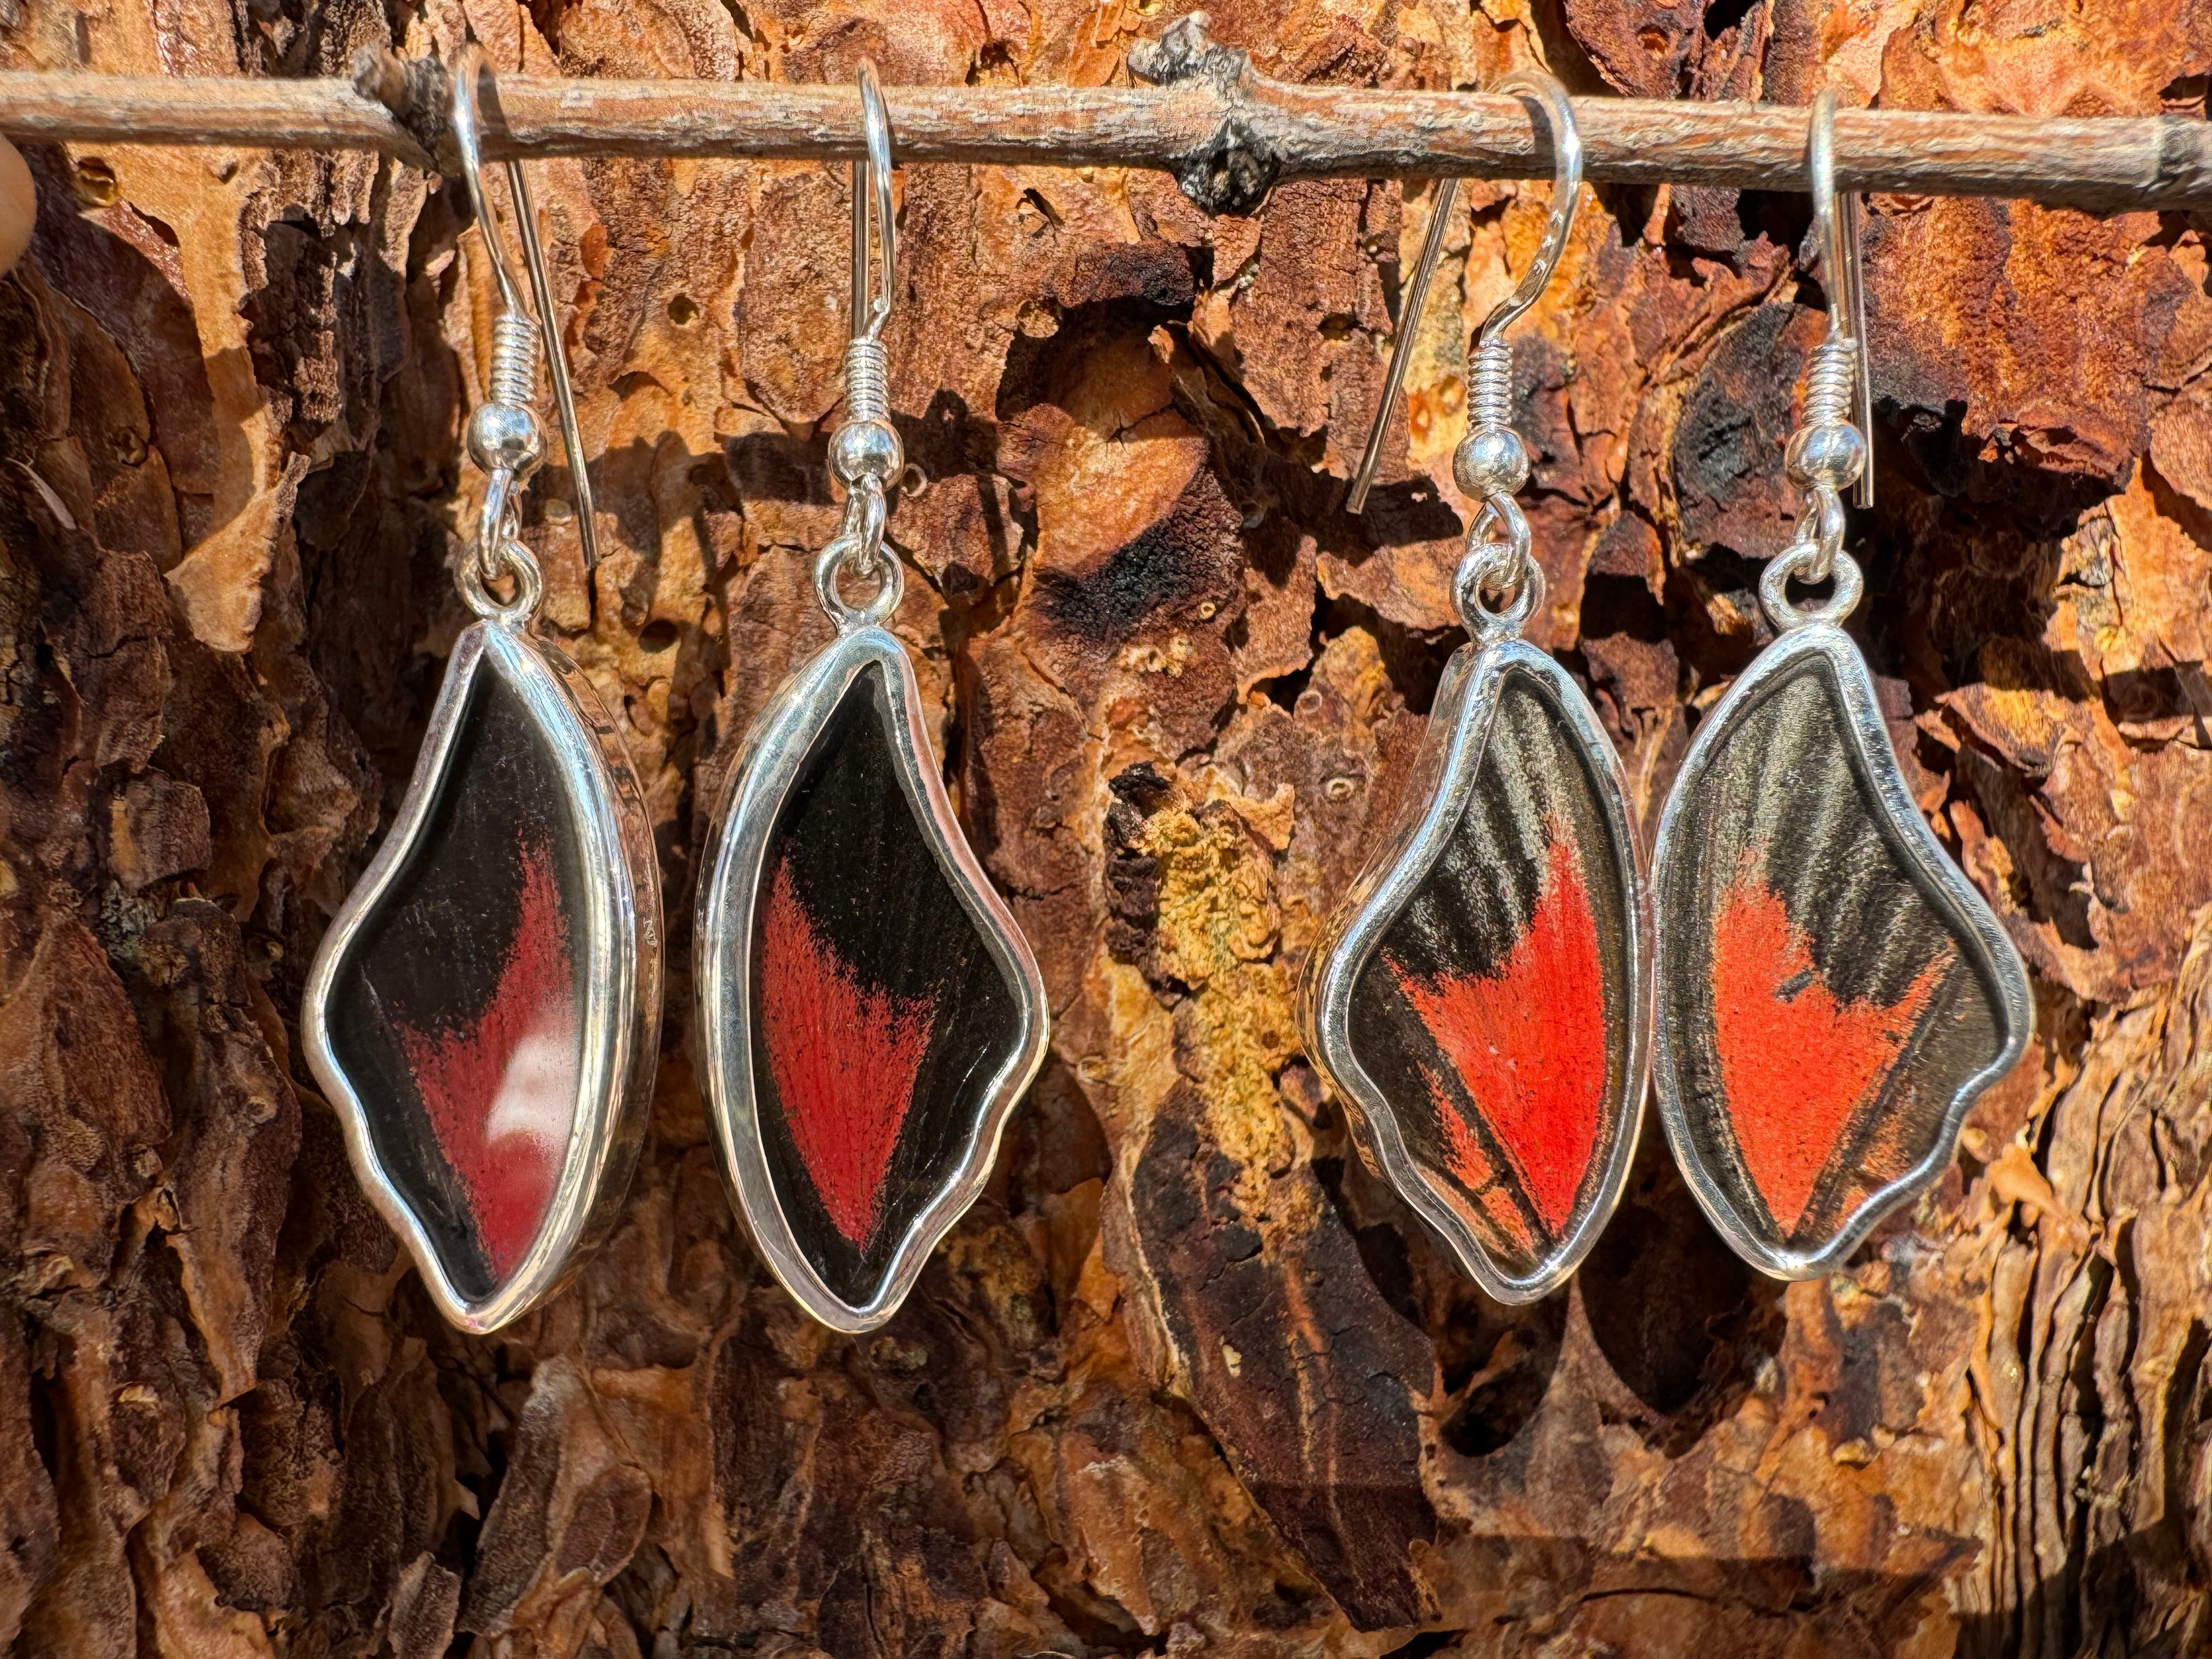 Red Scarlet Butterfly Wing Drop Earrings in 99.5 Fine Silver